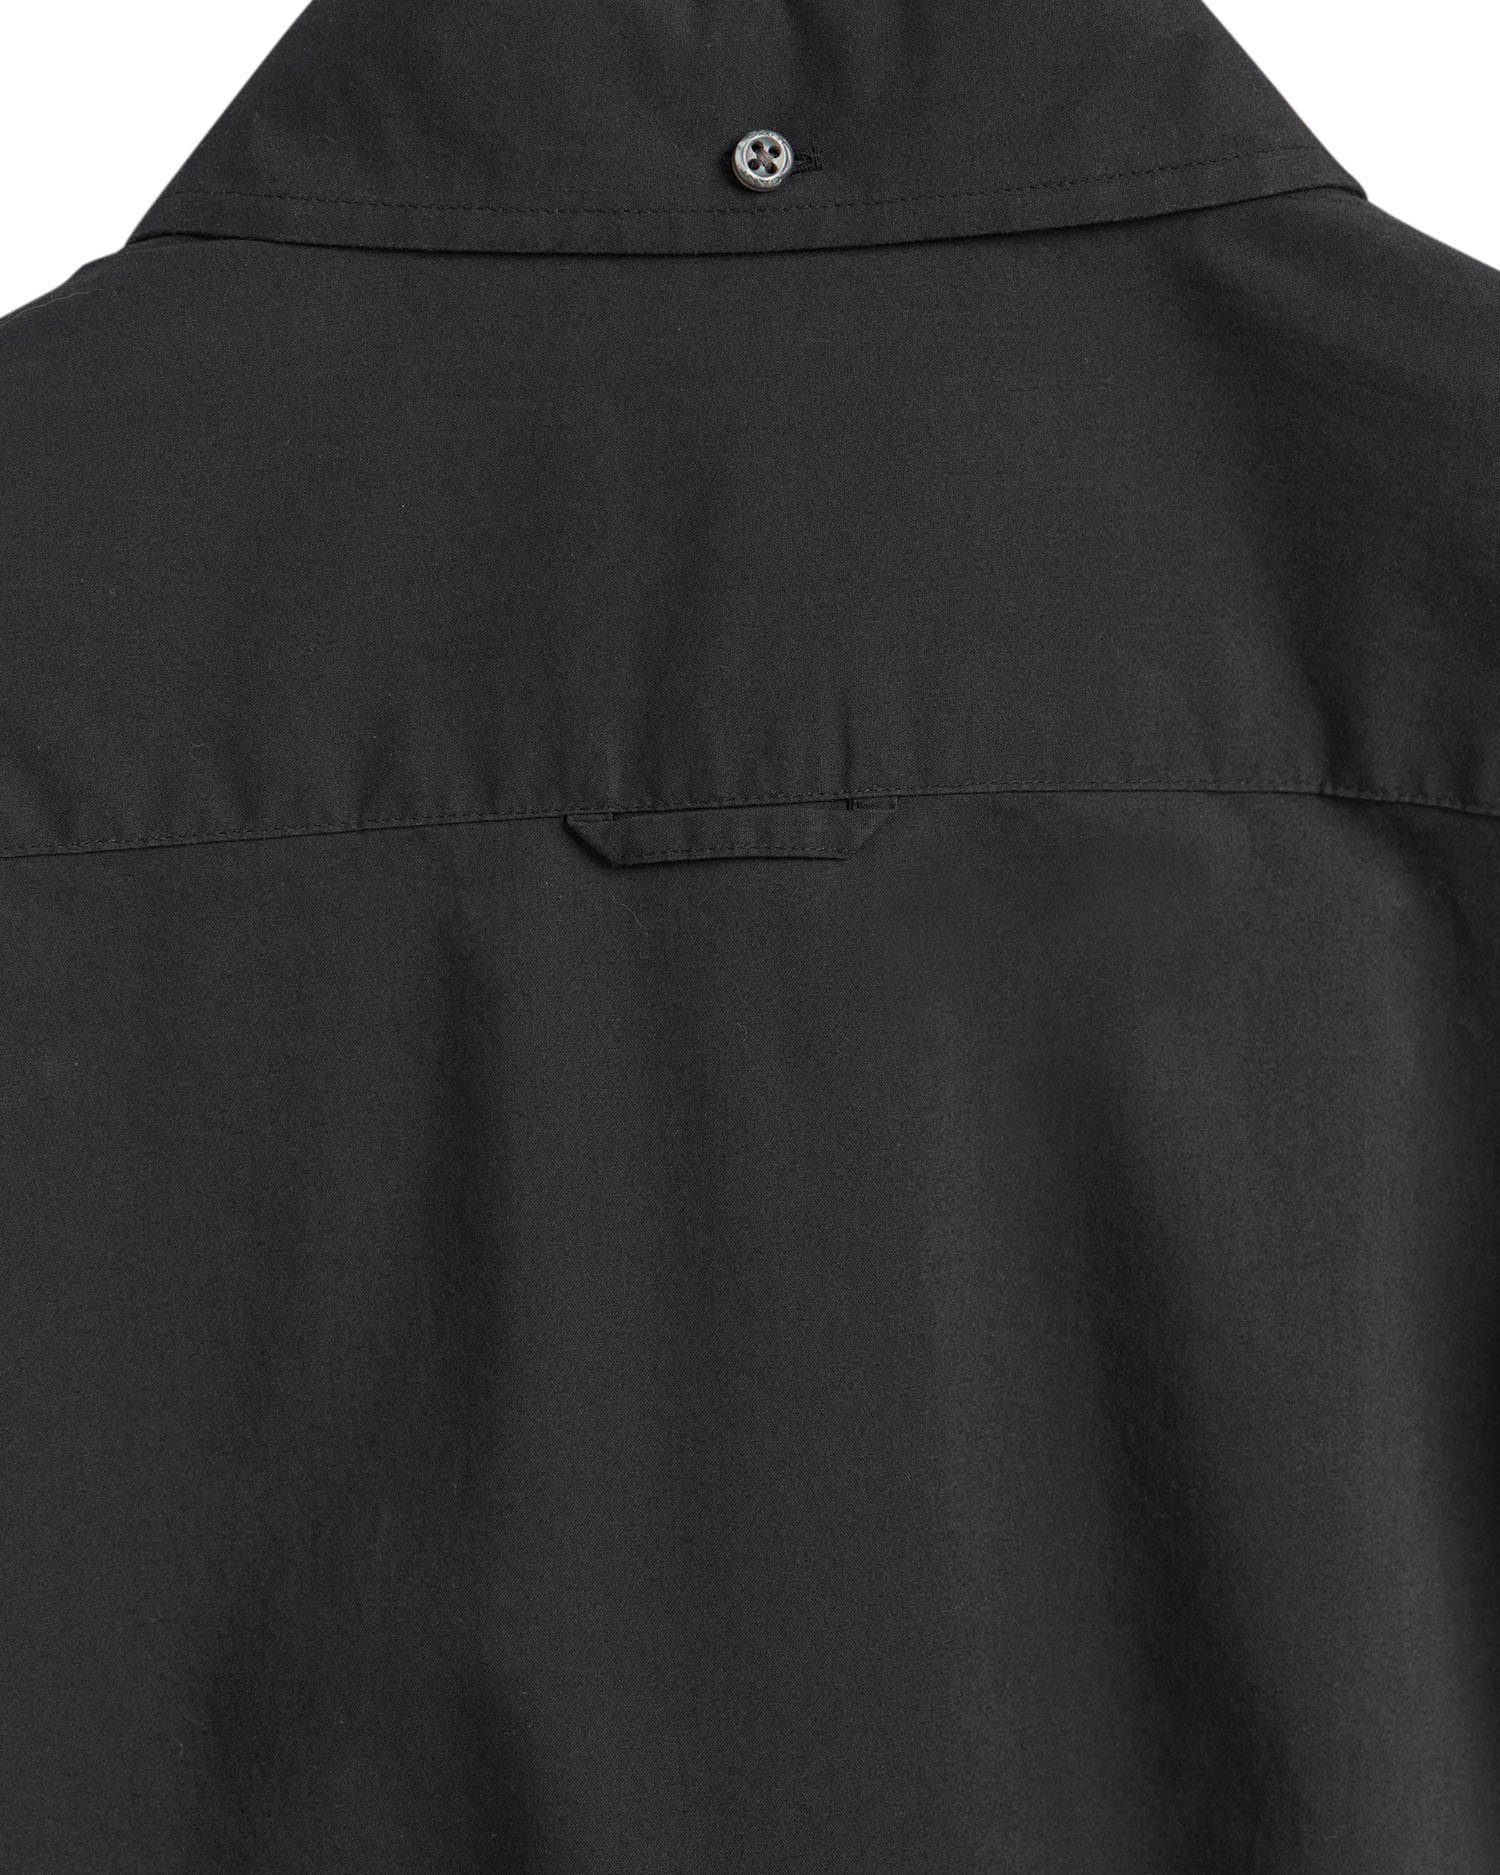 Kent-Kragen und mit Brusttasche klassisches einer black SLIM Design Businesshemd BROADCLOTH Gant BD